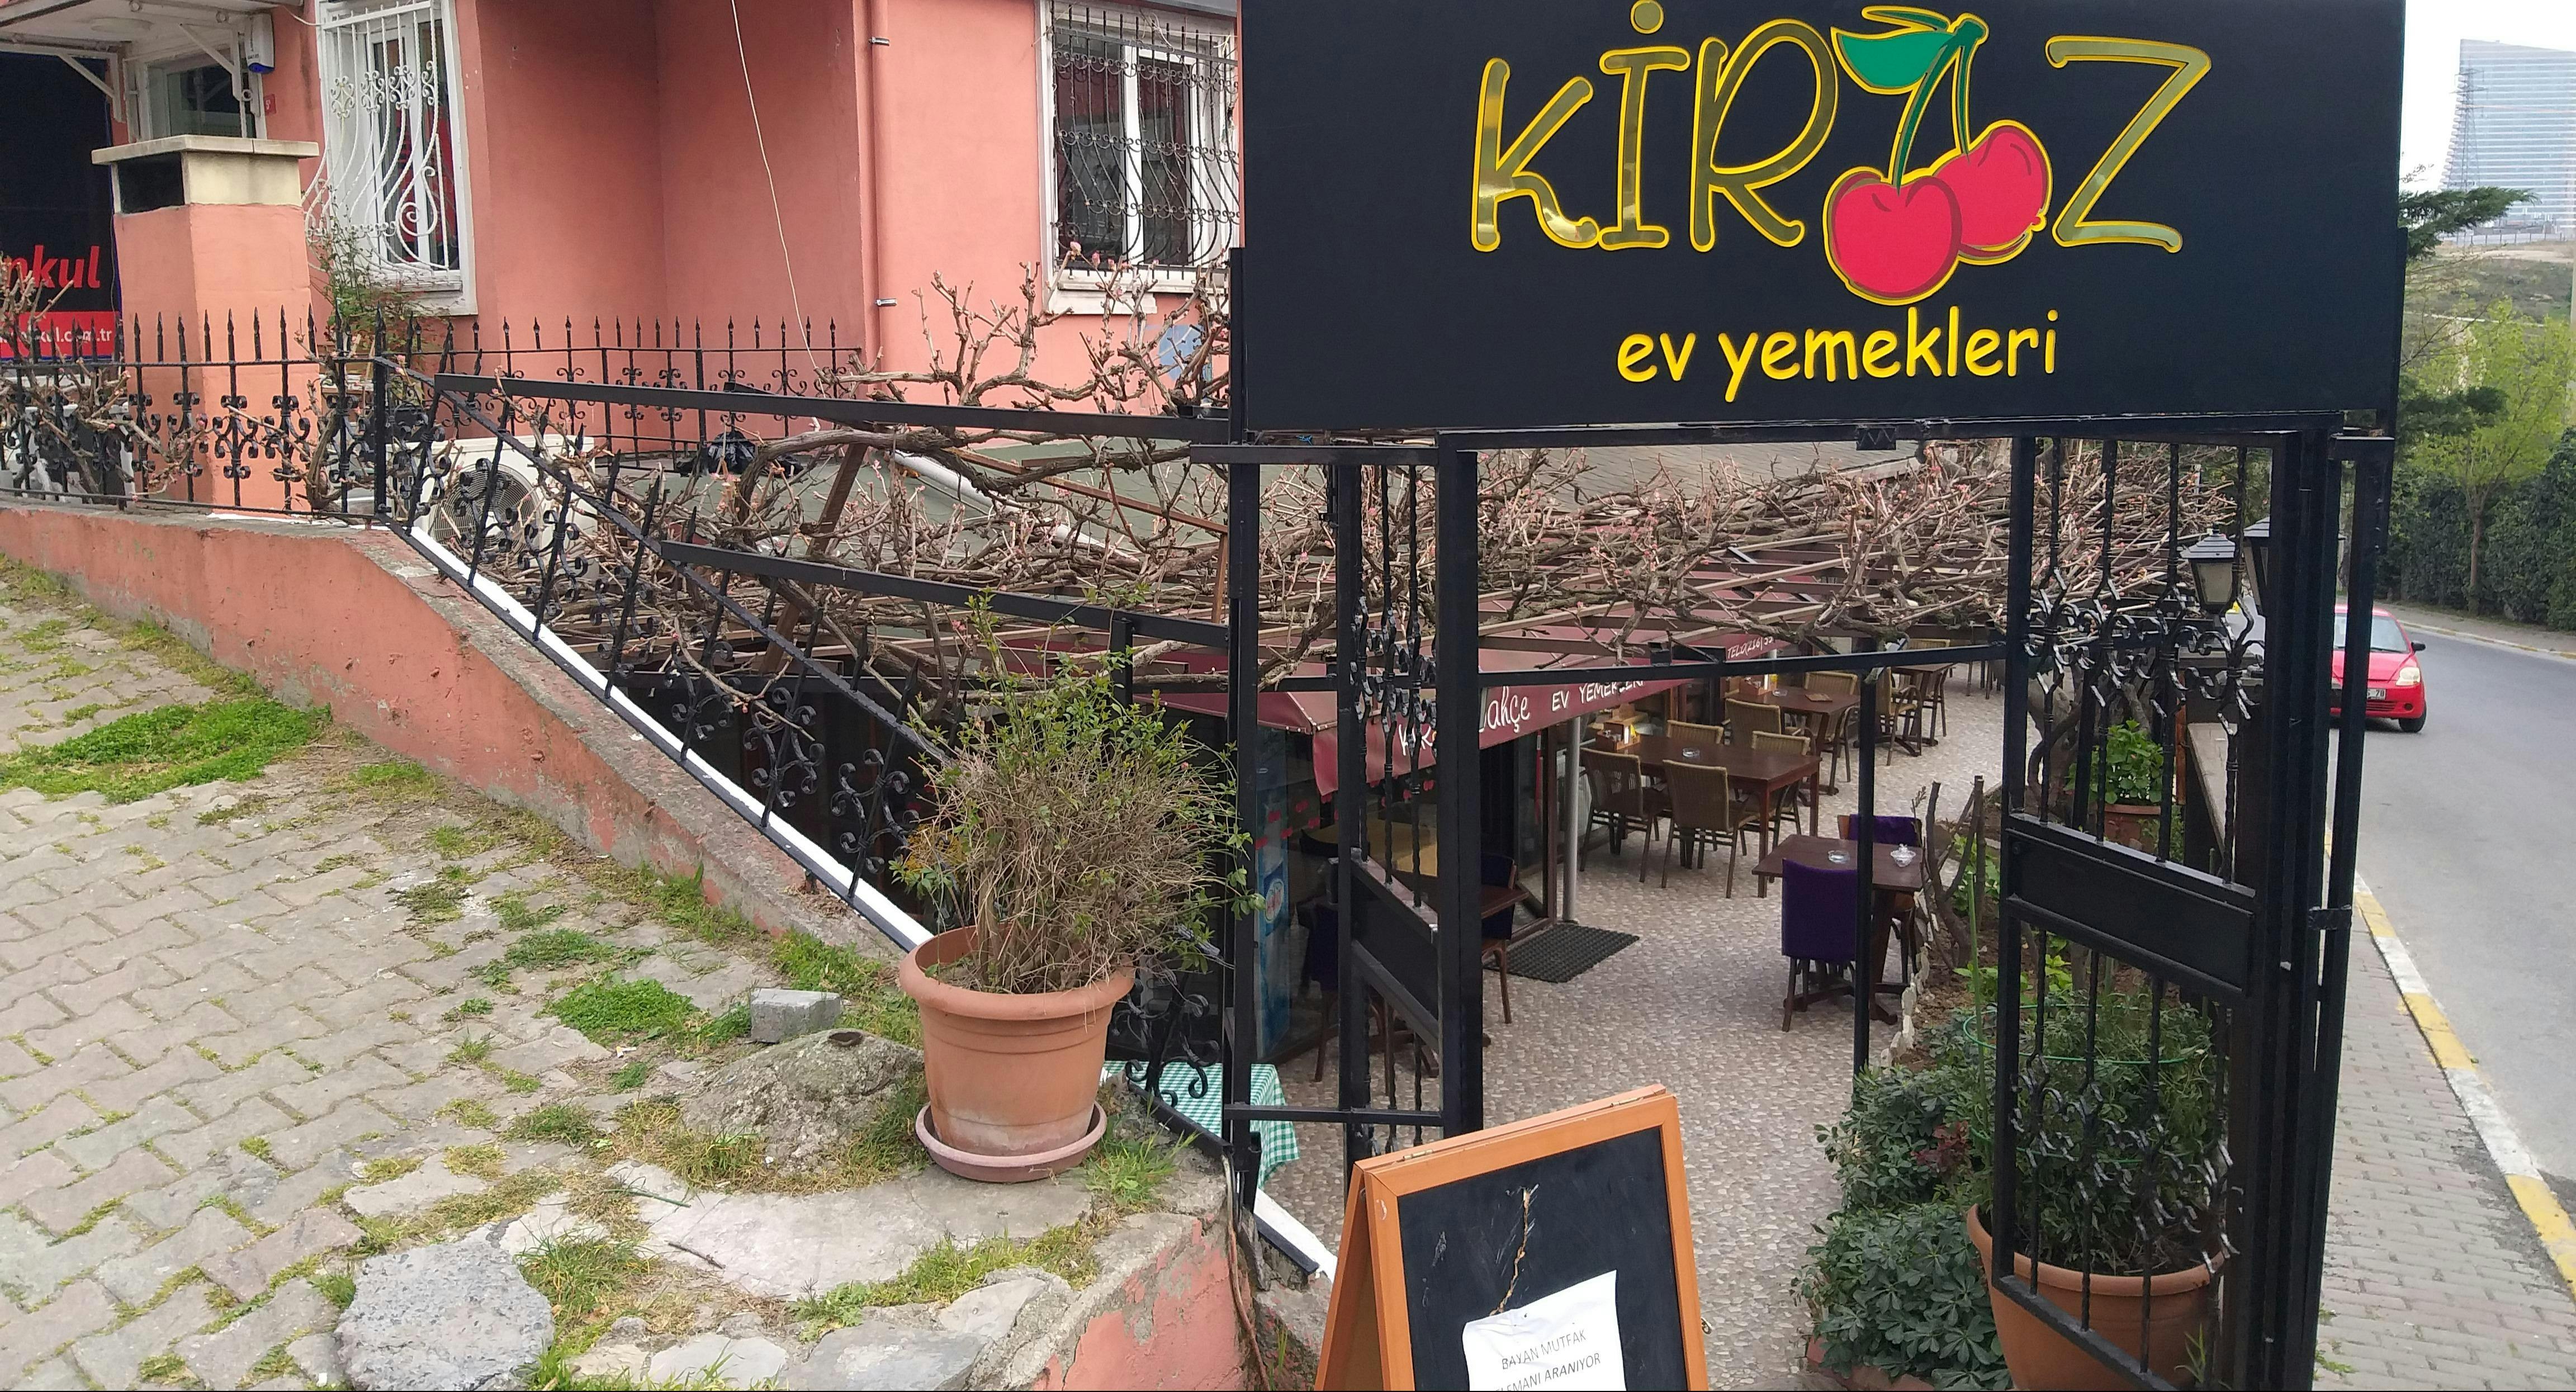 Photo of restaurant Kiraz Bahçe in Ümraniye, Istanbul